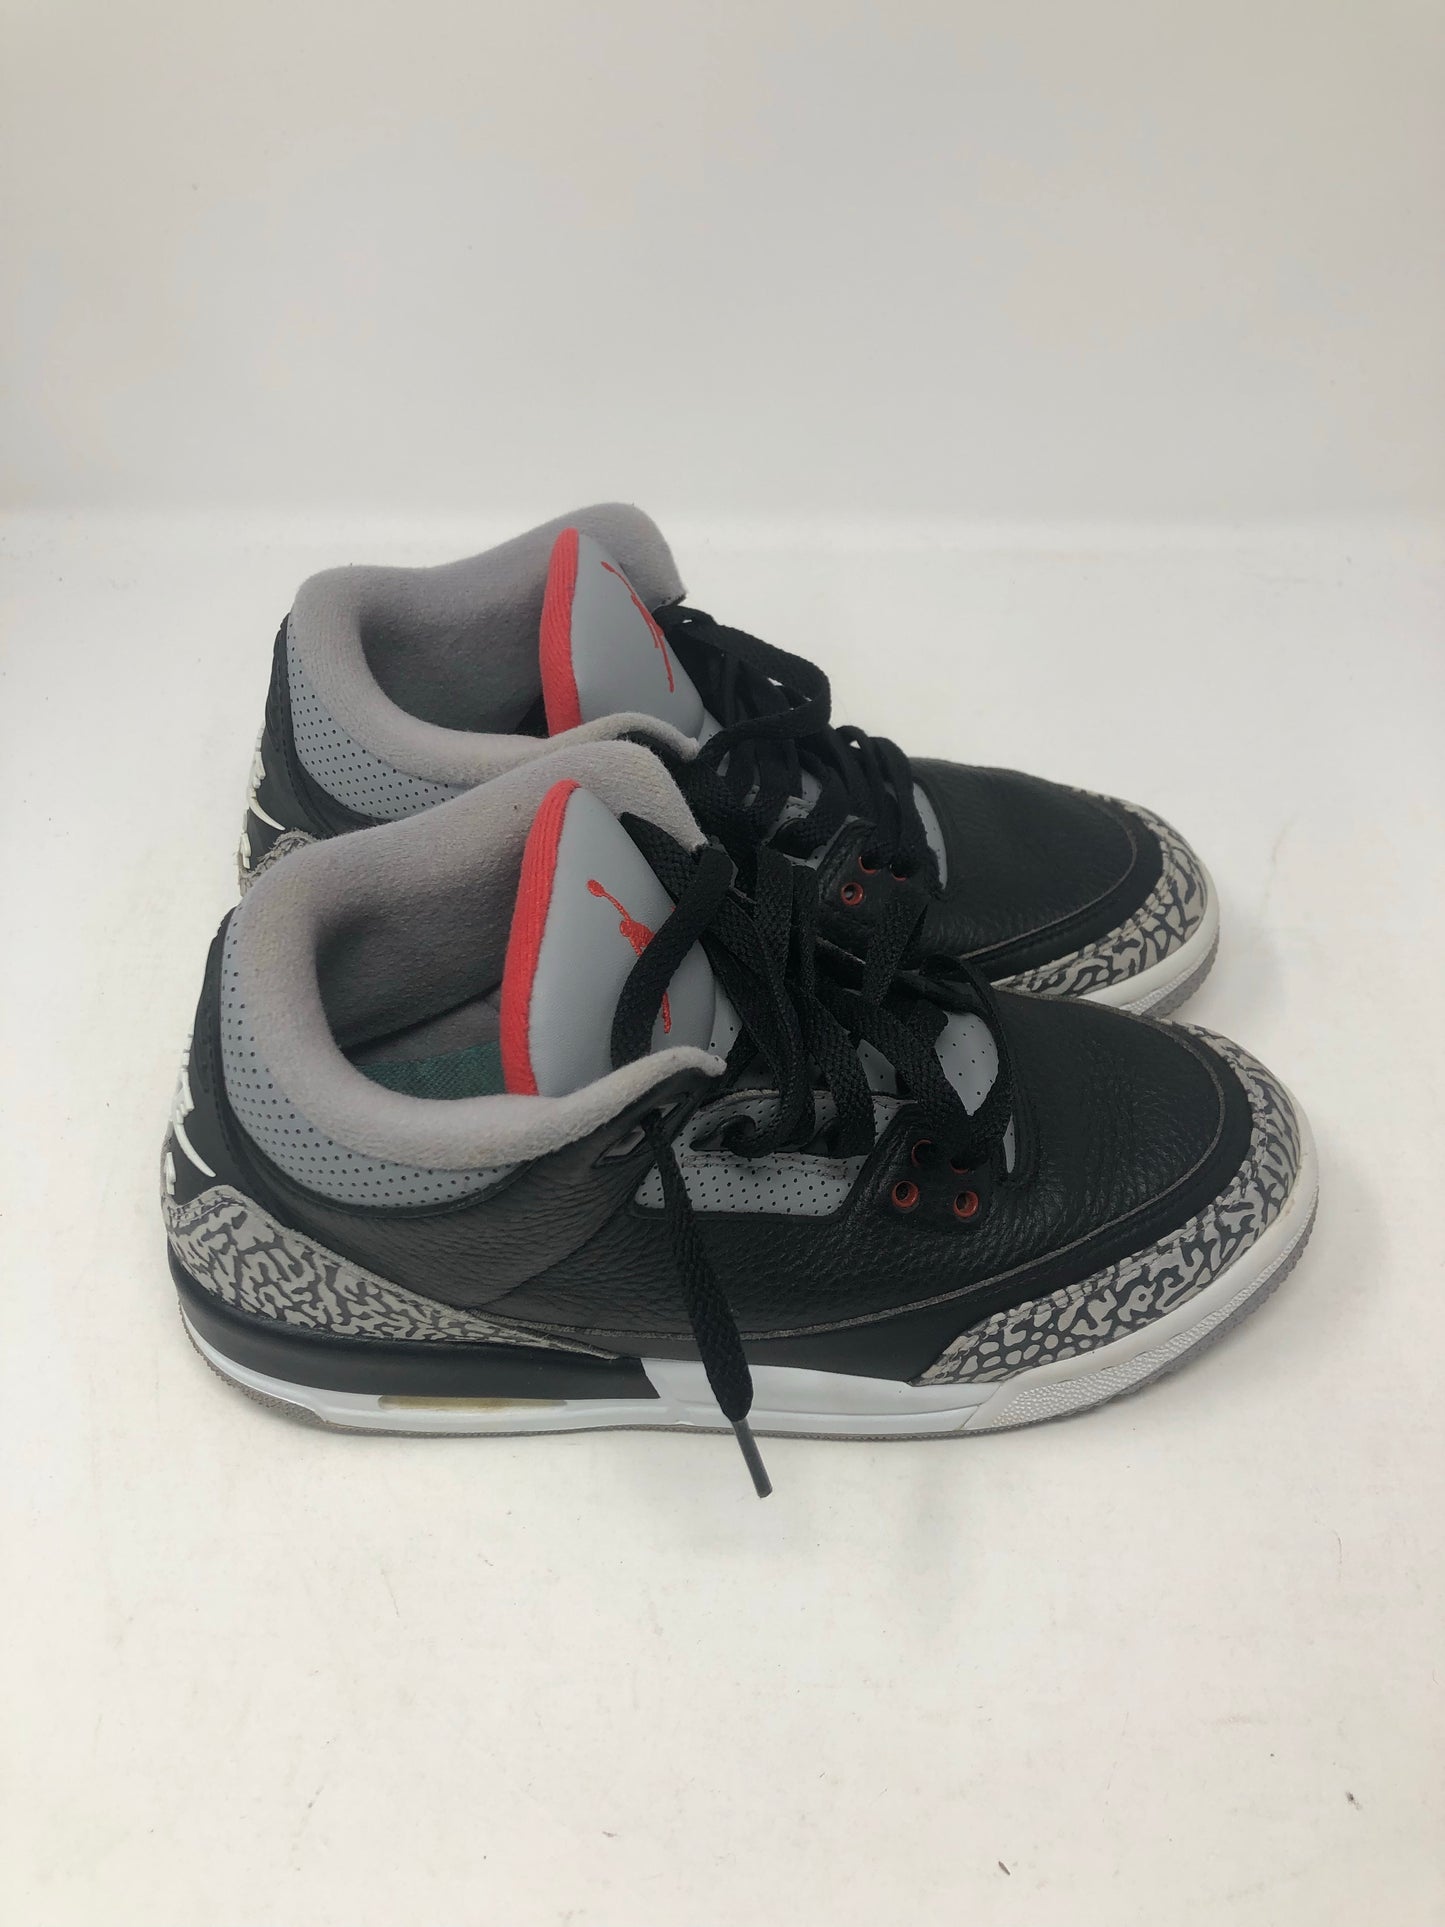 Jordan 3 Retro Black Cement 2018 (GS) Sz 7Y/8.5W